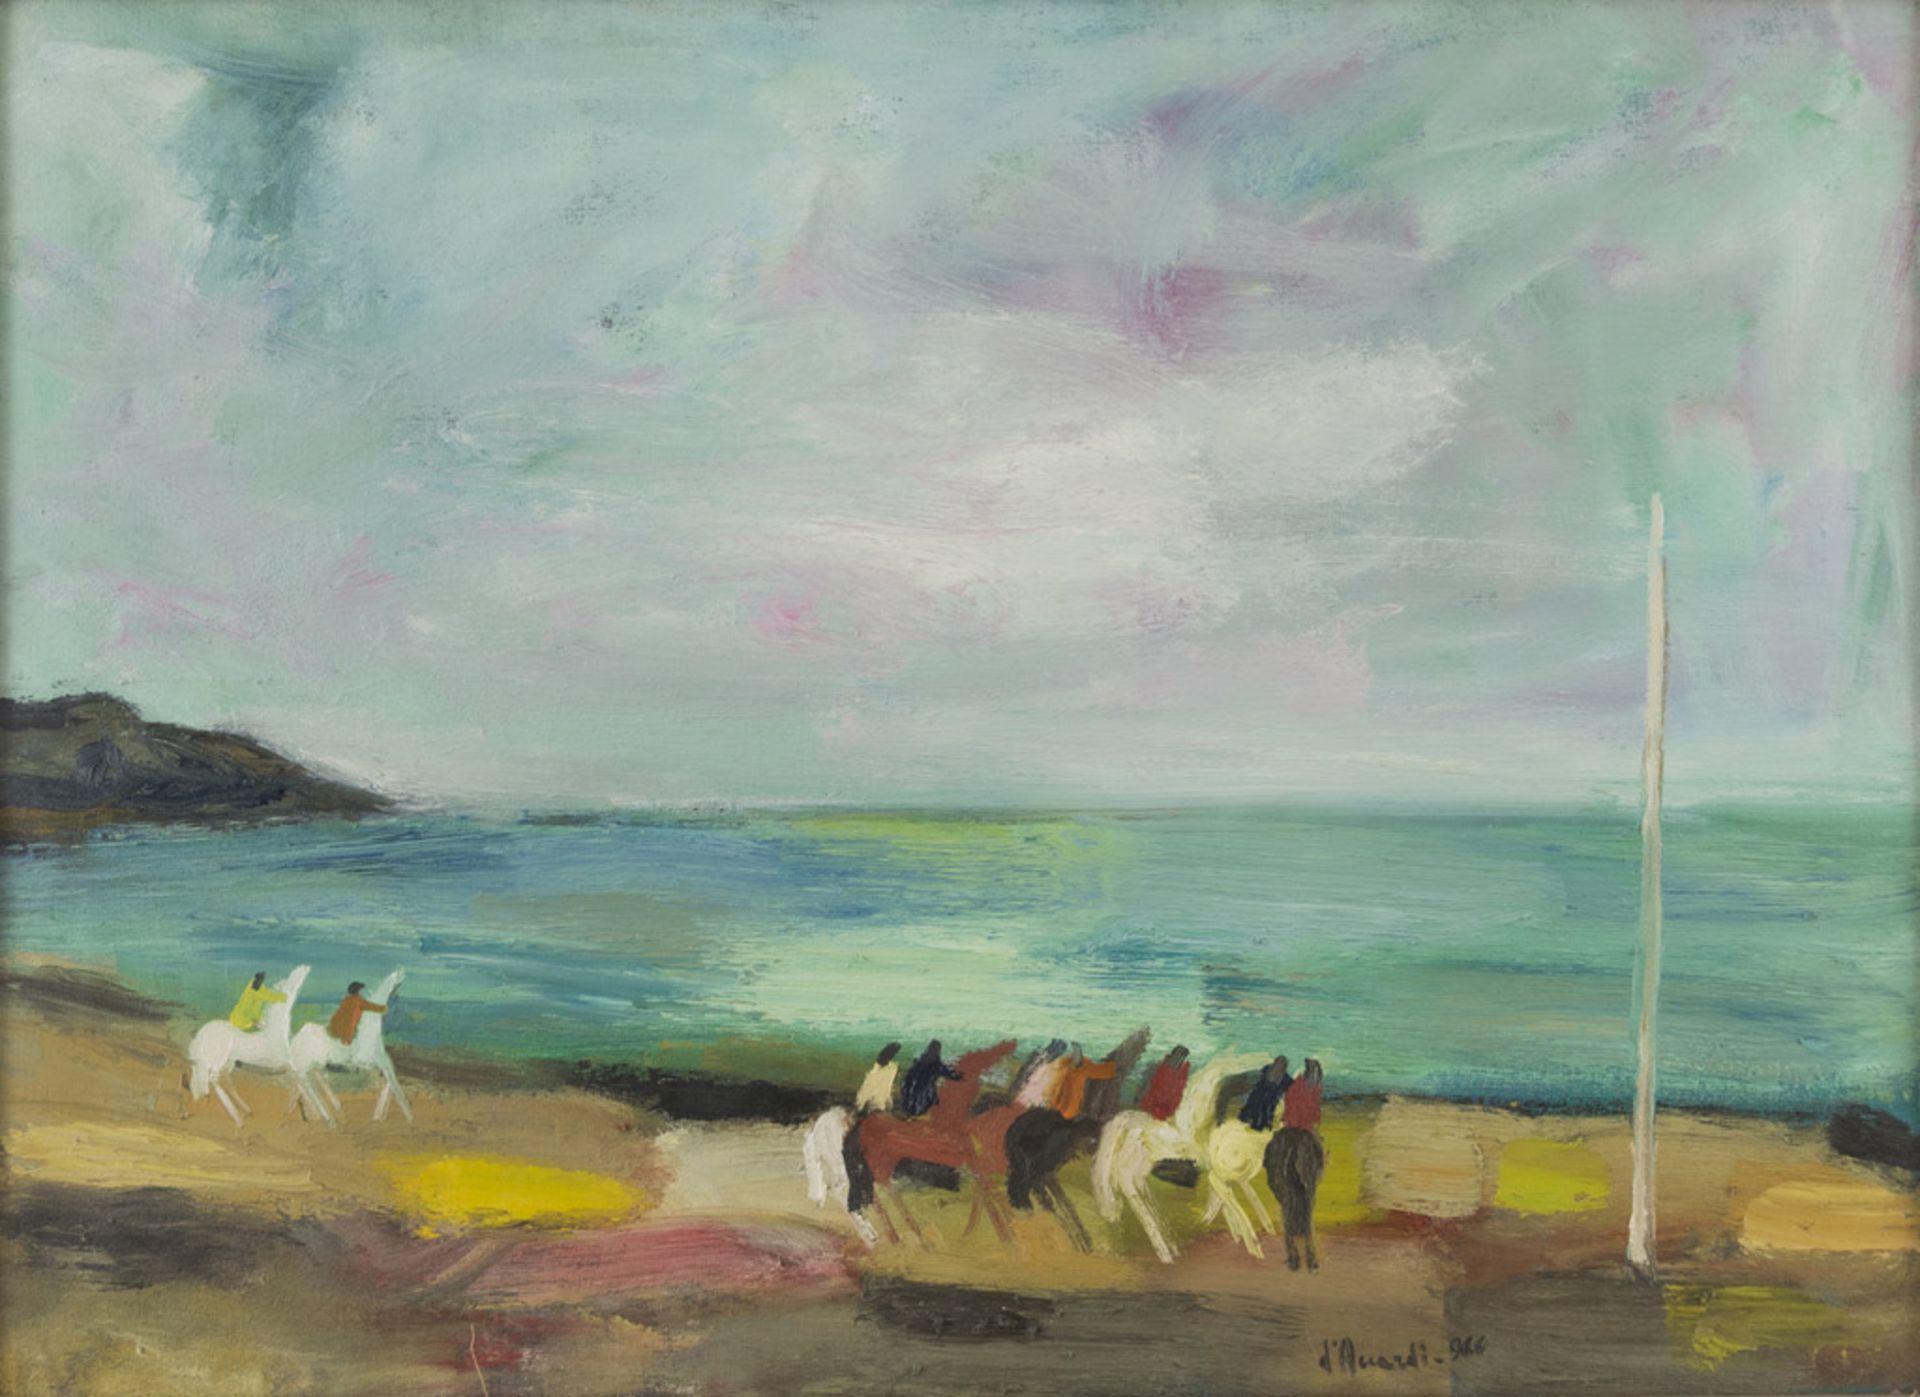 GIAN RODOLFO D'ACCARDI (1906 - 1993) Cavalcata in riva al mare, 1966 Olio su tela, cm. 74 x 100